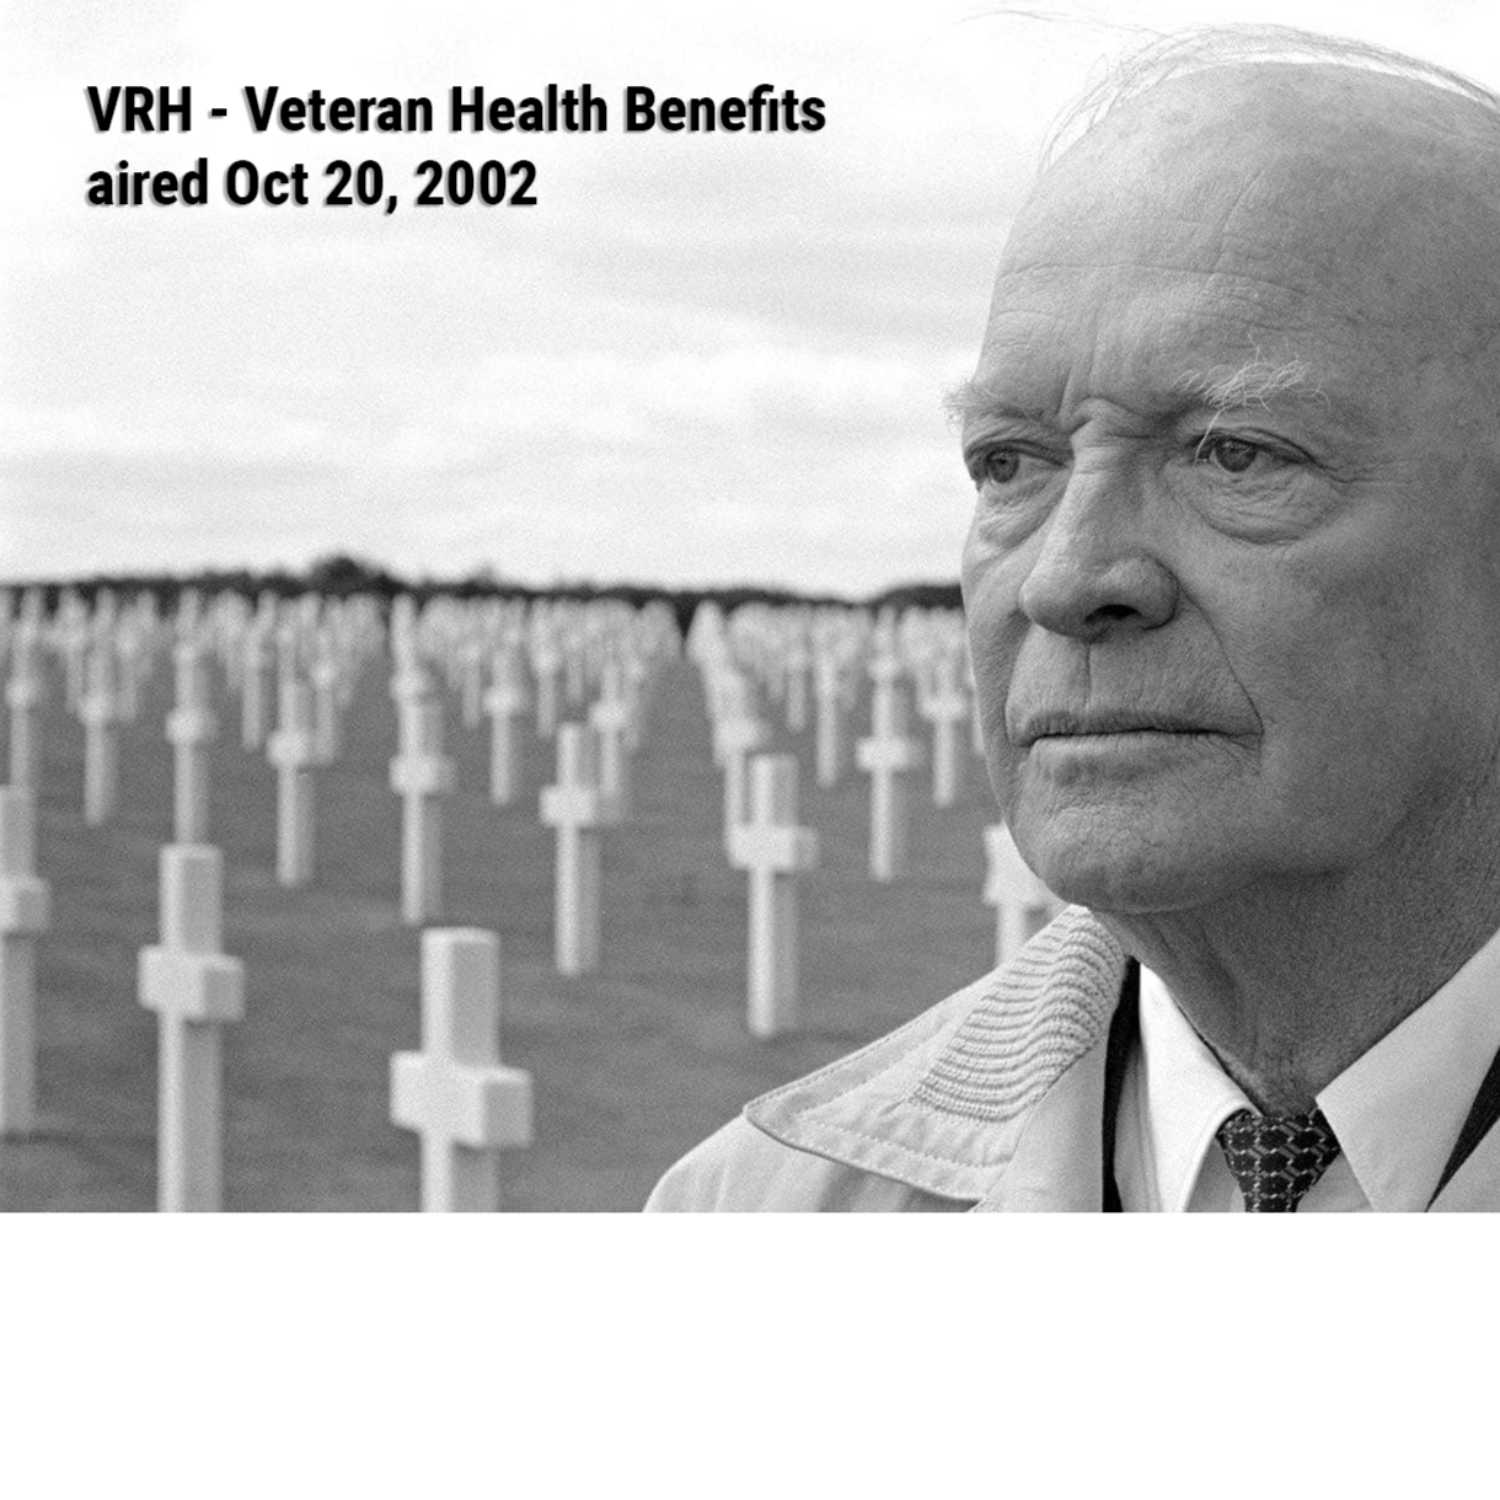 VRH - Veteran Health Benefits - aired Oct 20, 2002